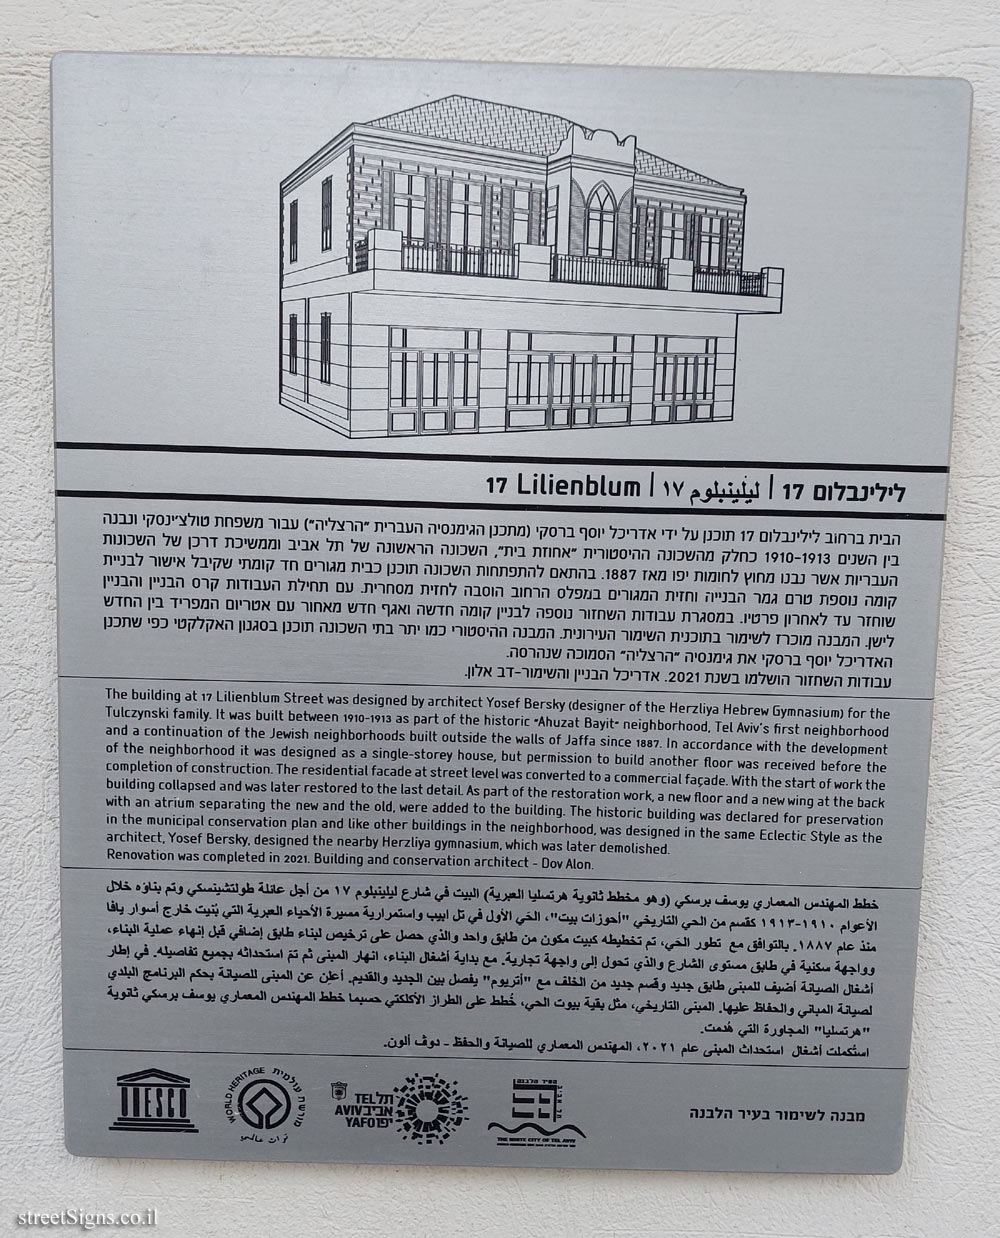 Tel Aviv - buildings for conservation - 17 Lilienblum